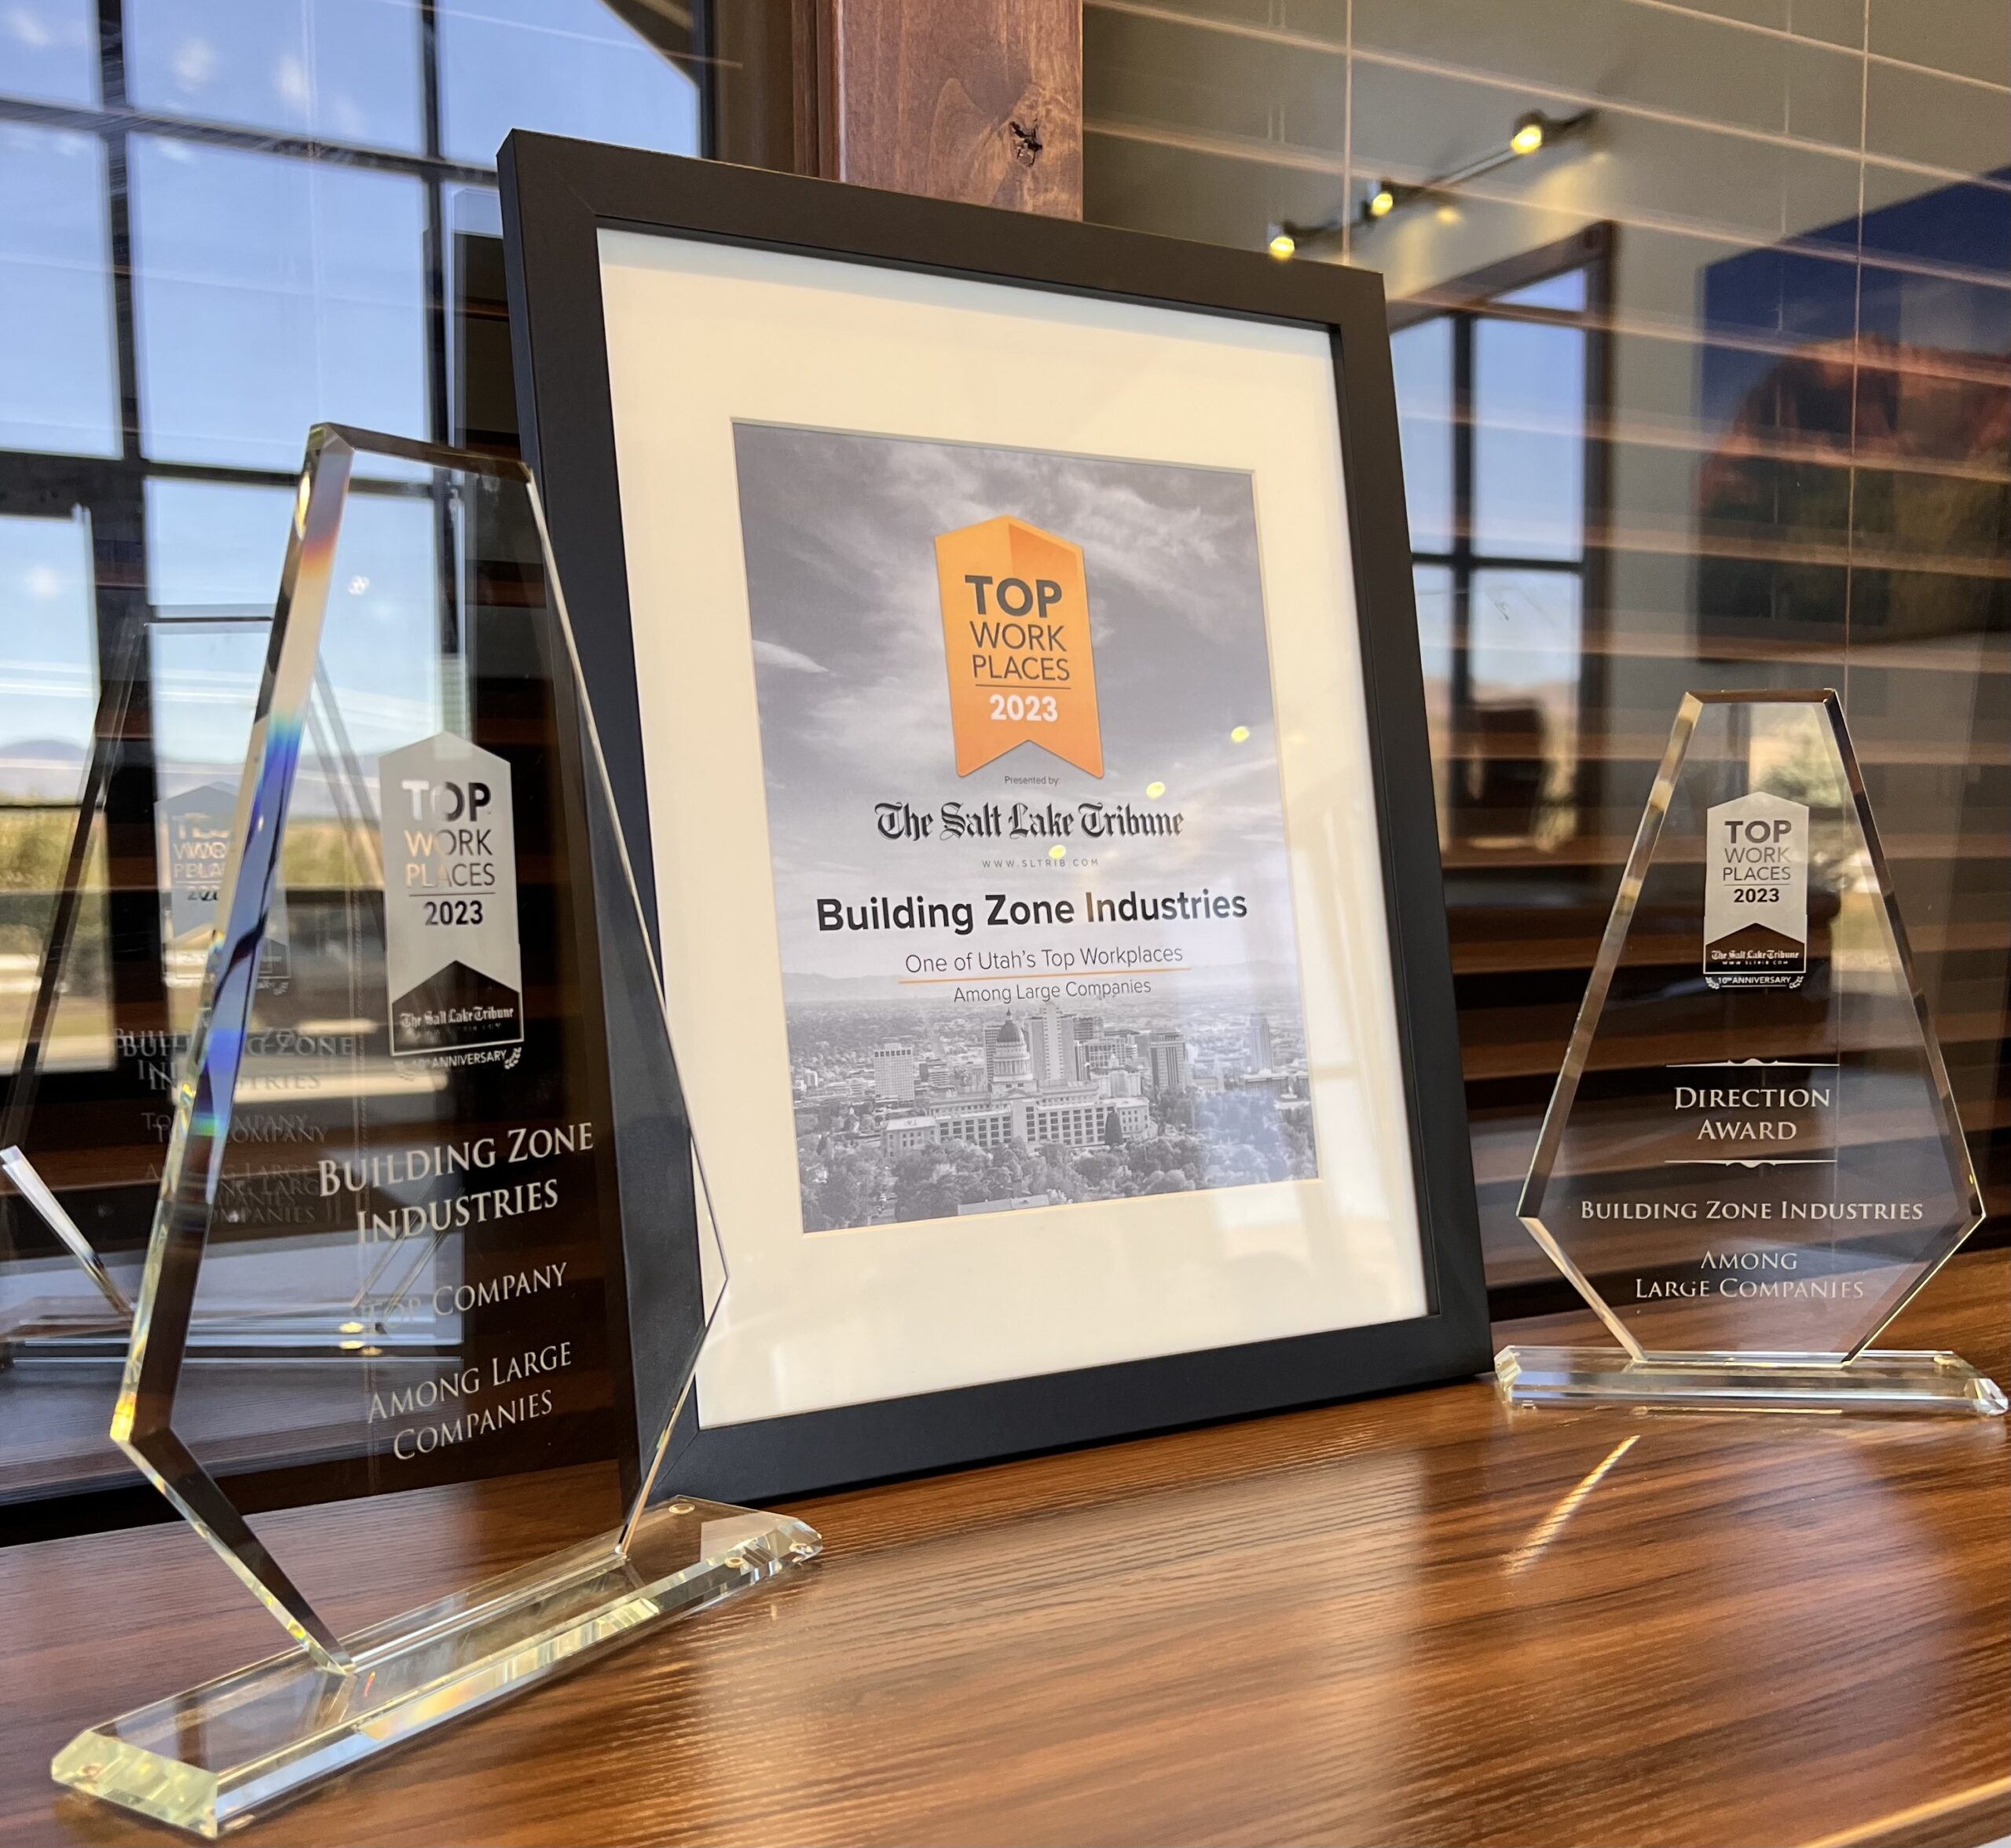 BZI nombrada nº 1 en los premios Top Workplaces 2023 de The Salt Lake Tribune para grandes empresas y reconocida por su crecimiento positivo, inspiración y visión con el "Premio a la Dirección"